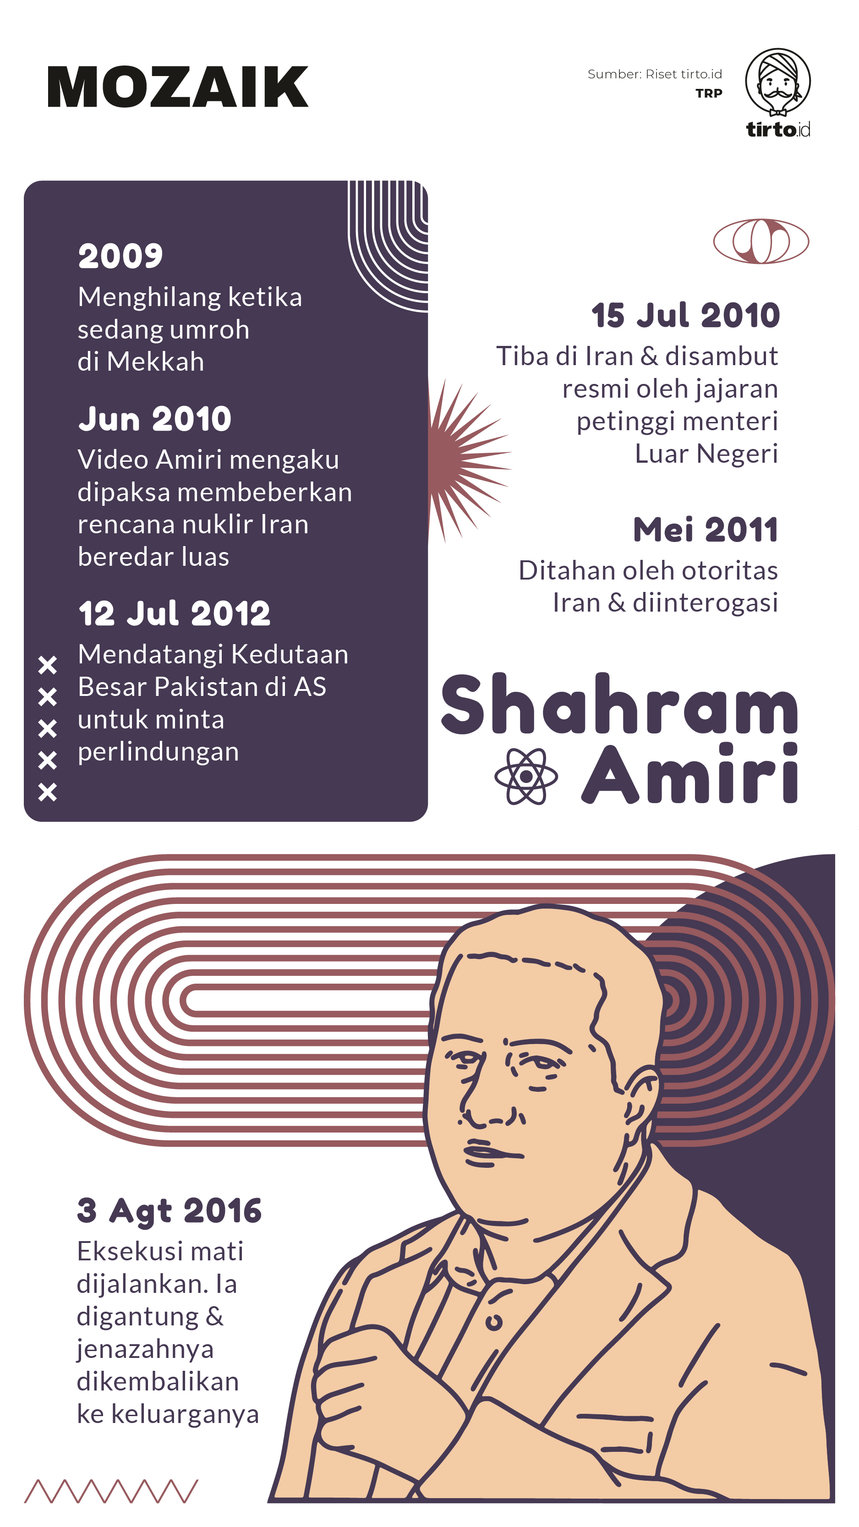 Infografik Mozaik Shahram Amiri